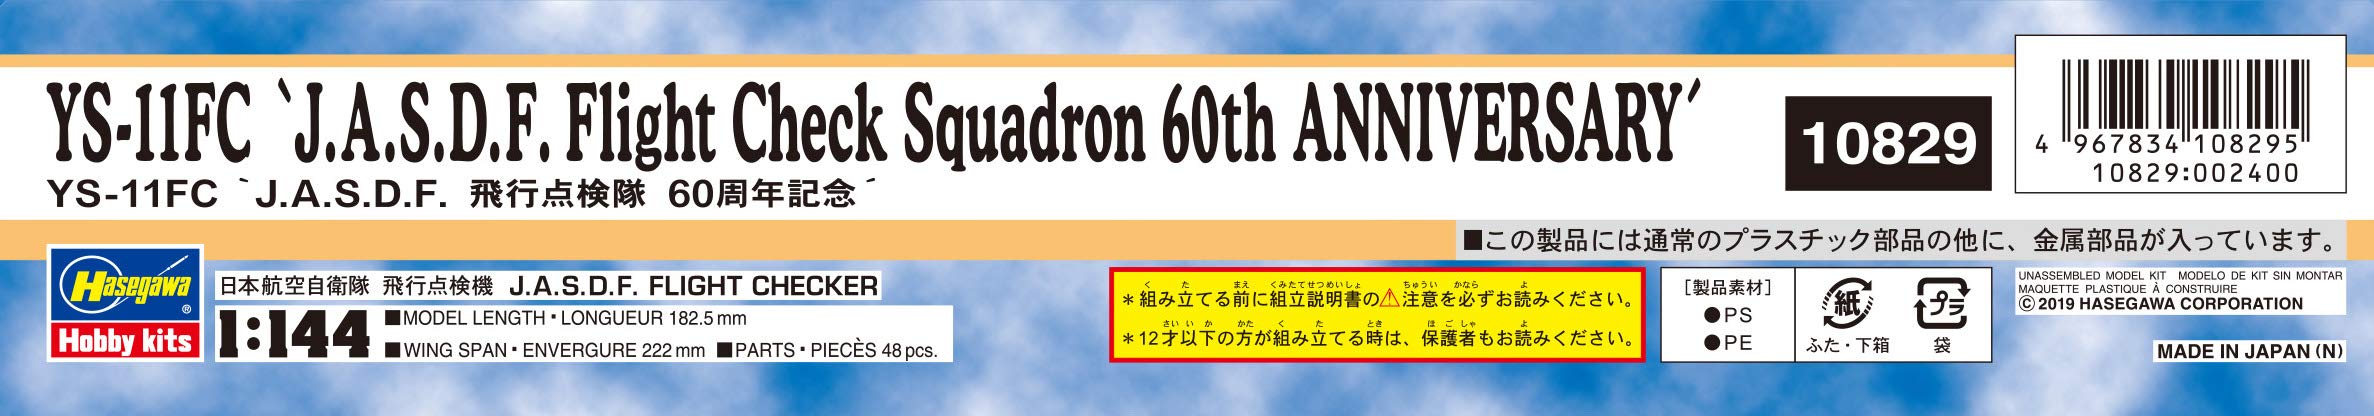 Hasegawa 60. Jahrestag Jasdf Fluginspektionsteam 1/144 Maßstab YS-11Fc Plastikmodell